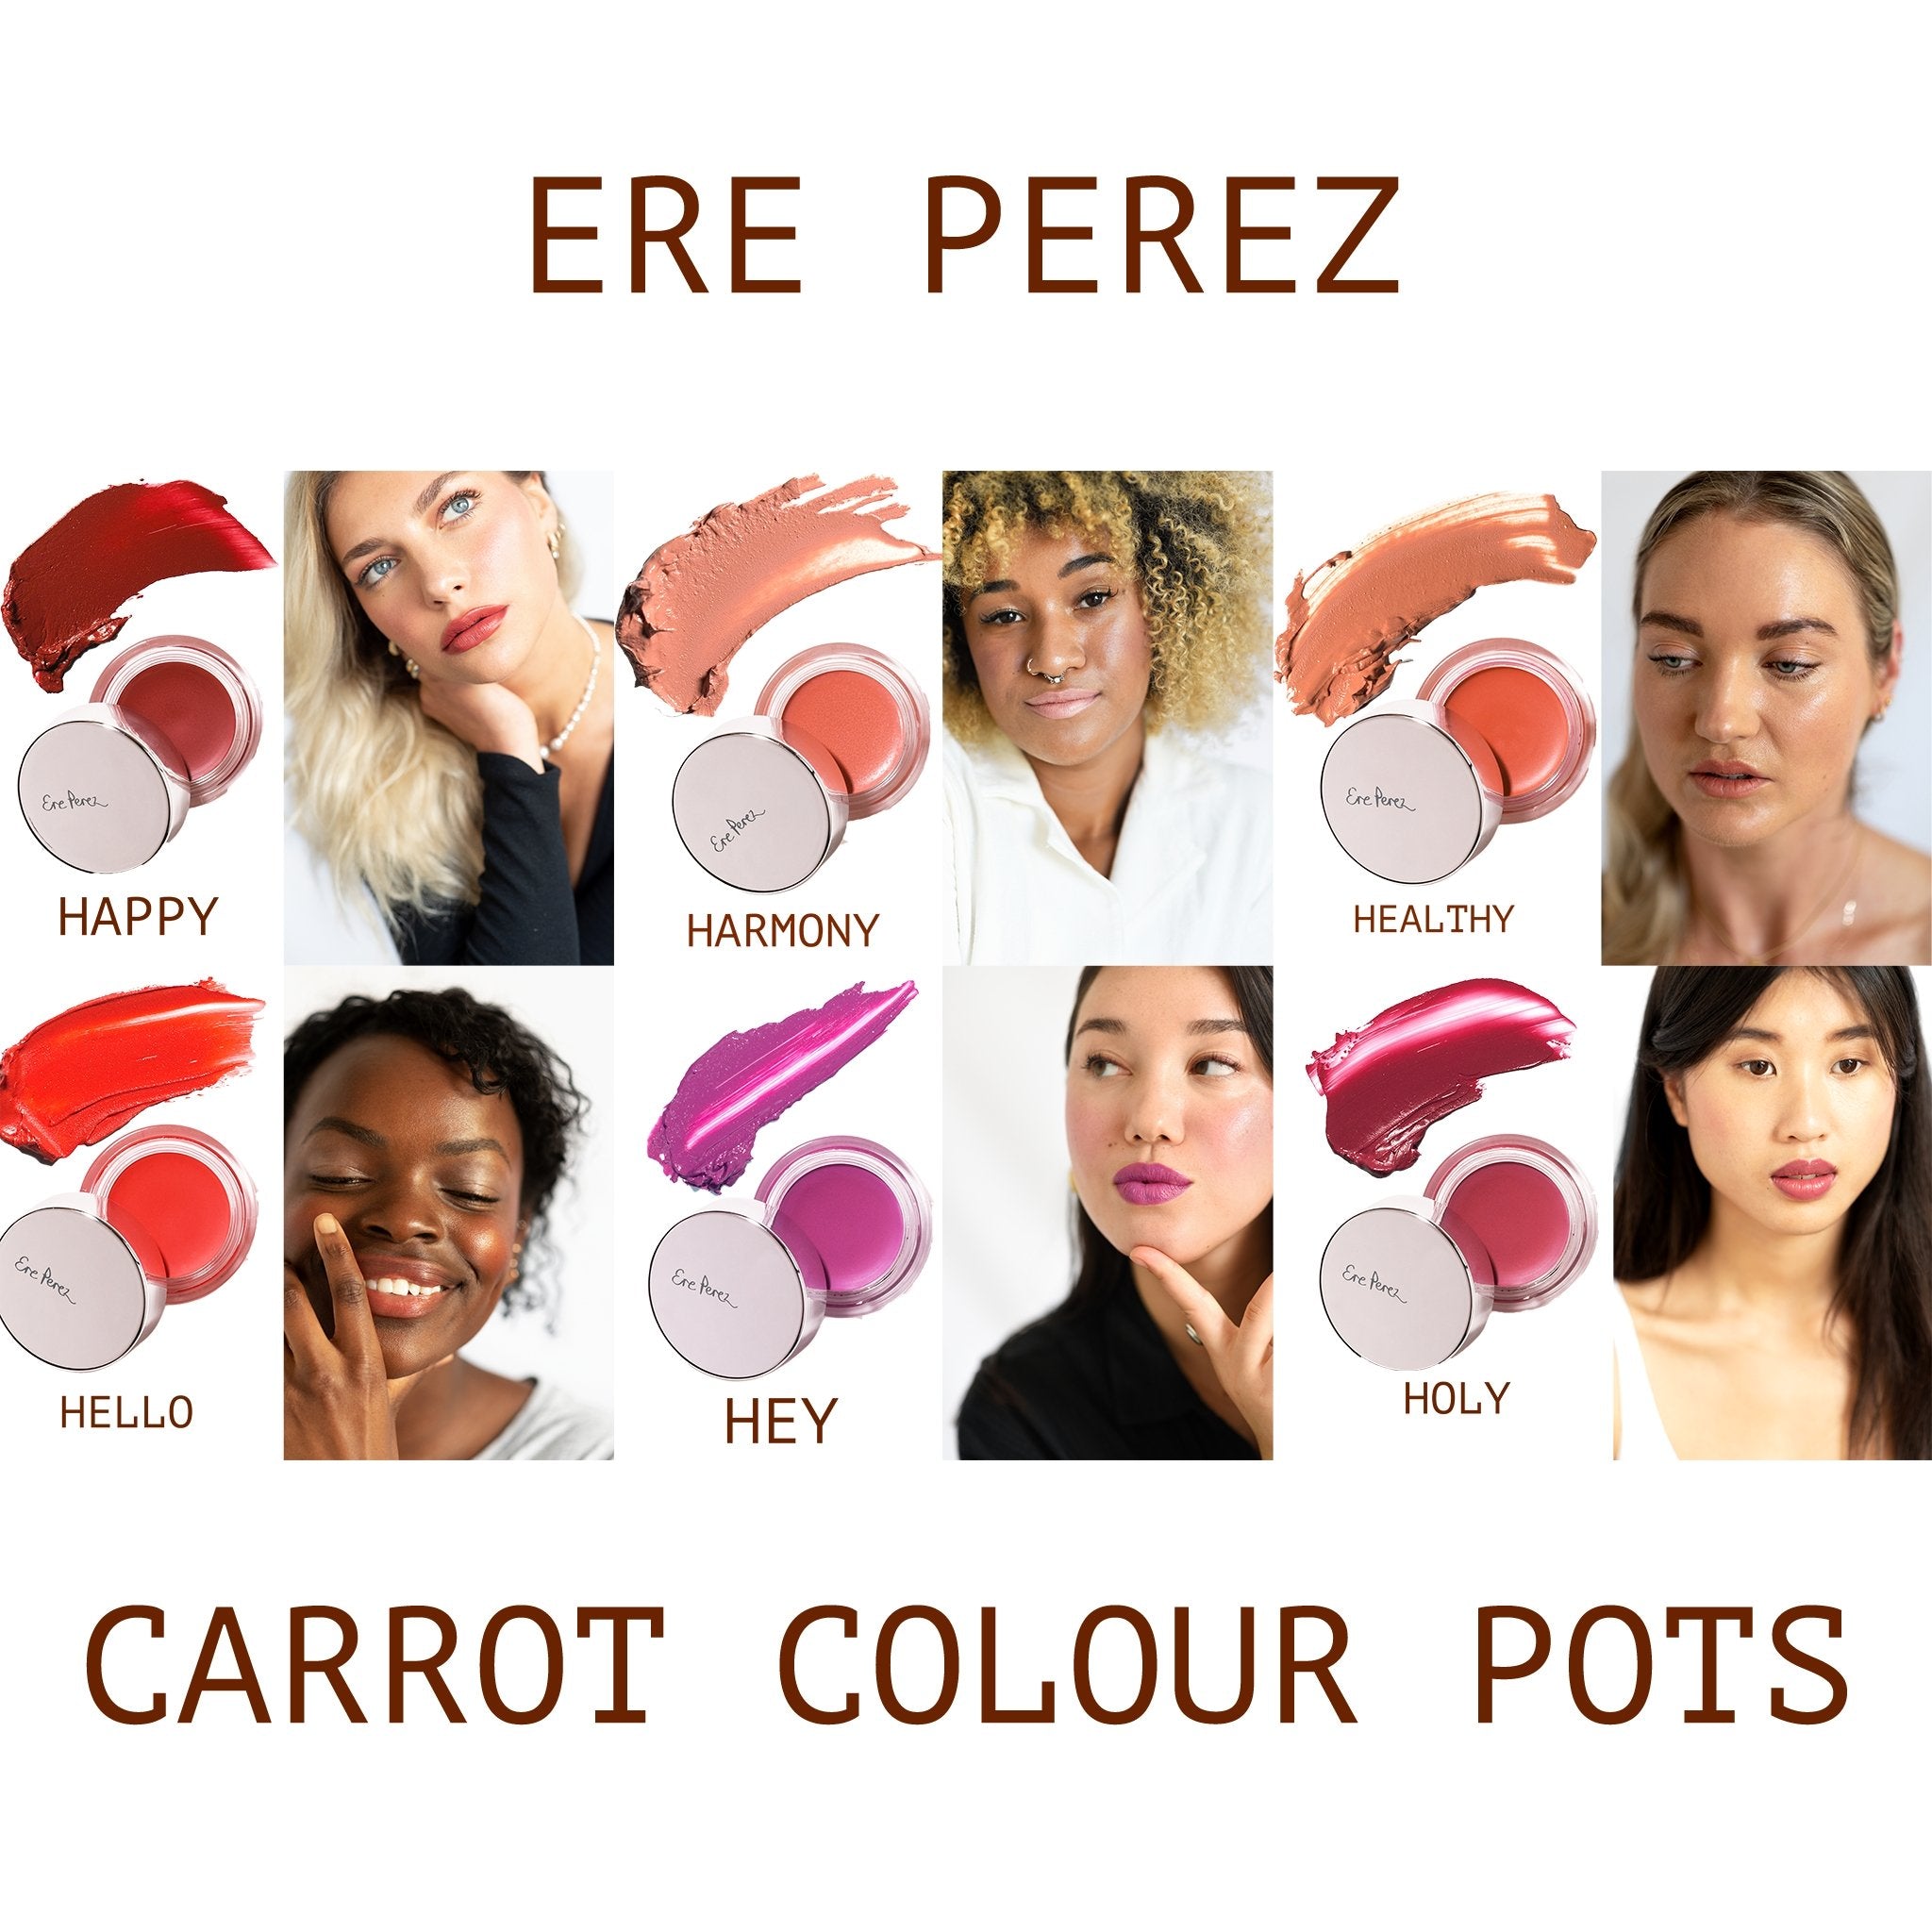 Carrot Colour Pots